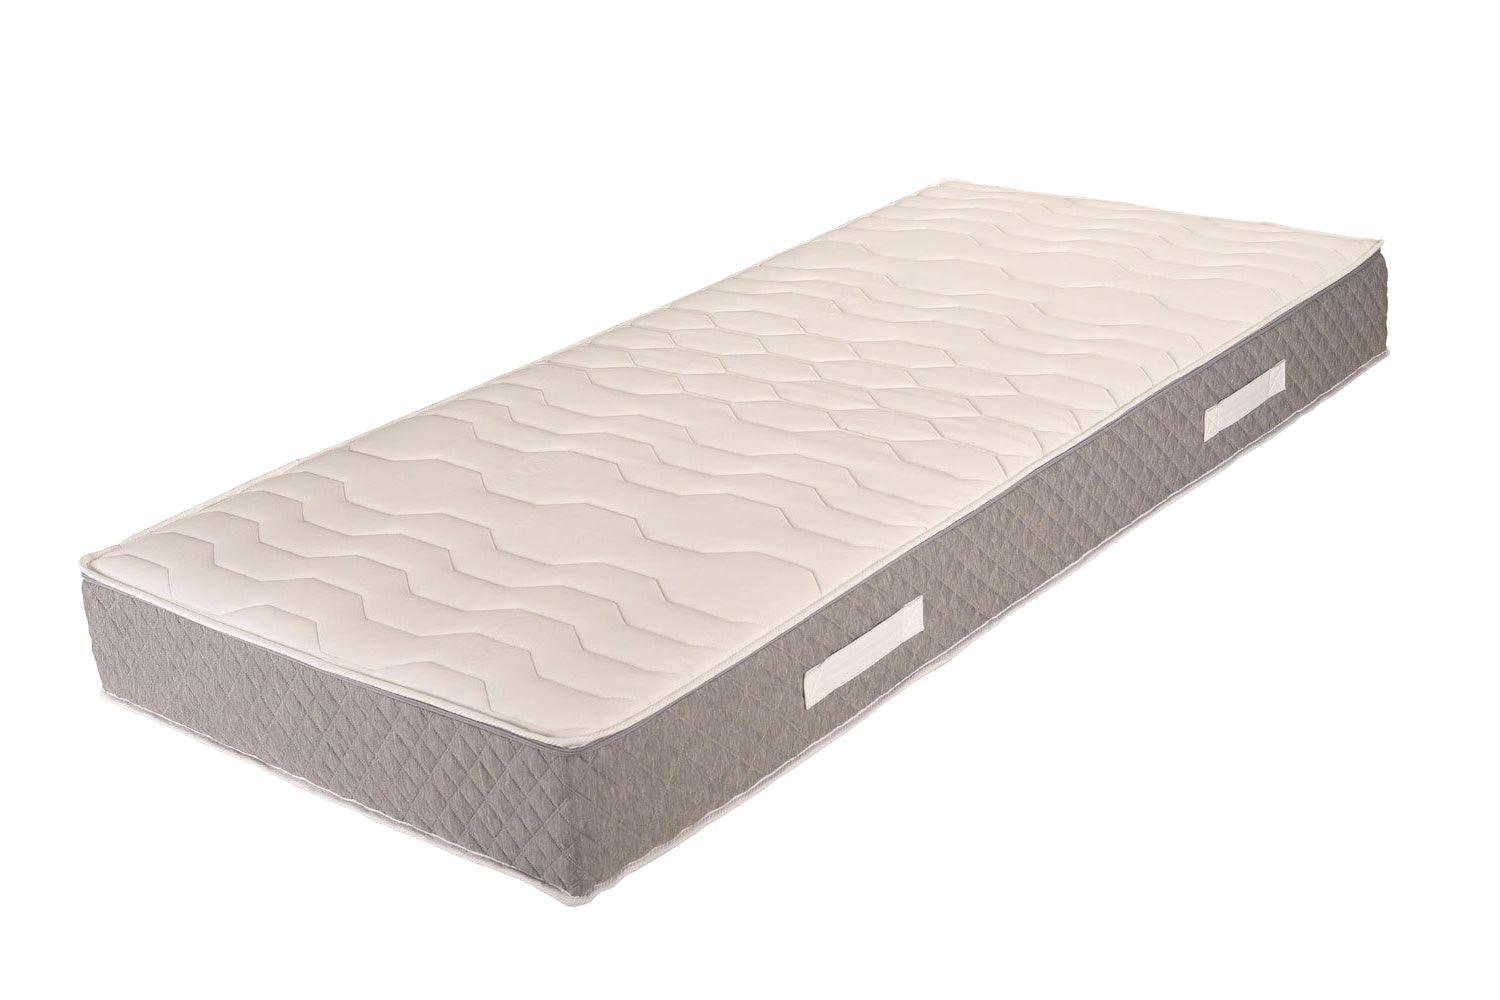 Optima Taschenfederkern Matratze kaufen - Perfekter Schlafkomfort